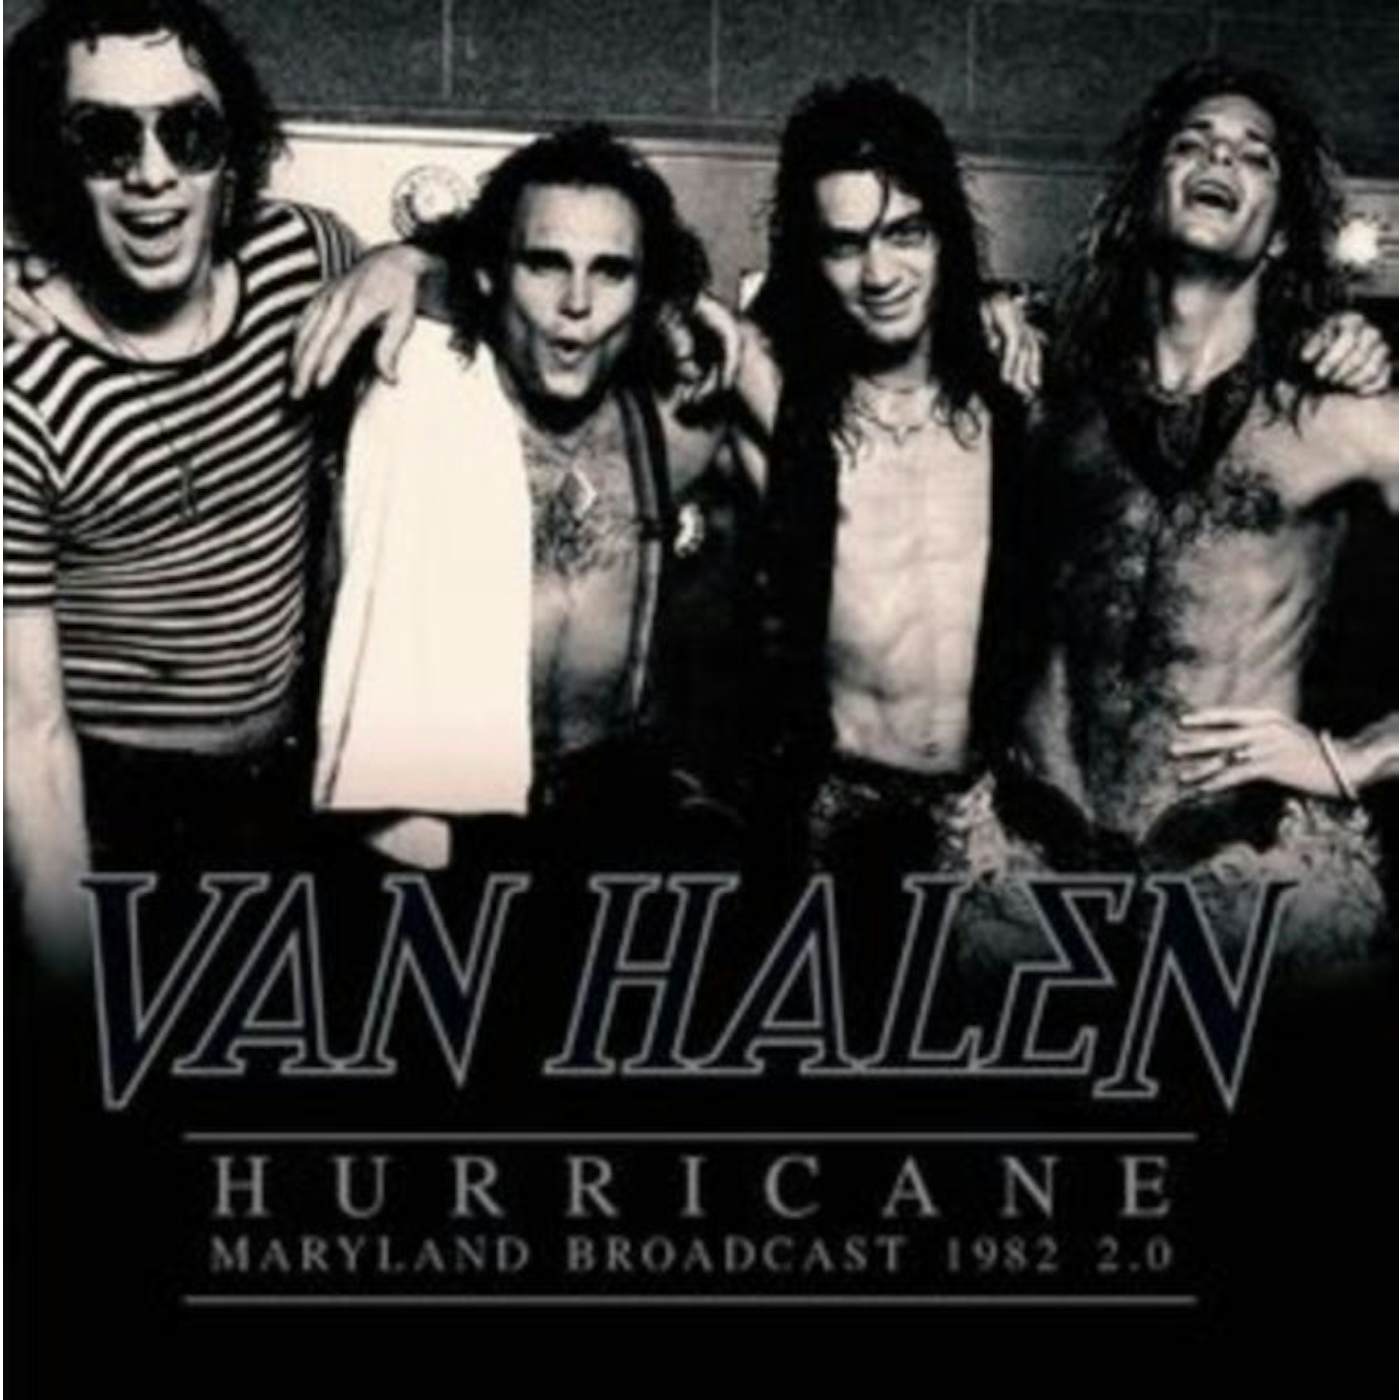 Van Halen LP Vinyl Record - Hurricane - Maryland Broadcast 19 82 20